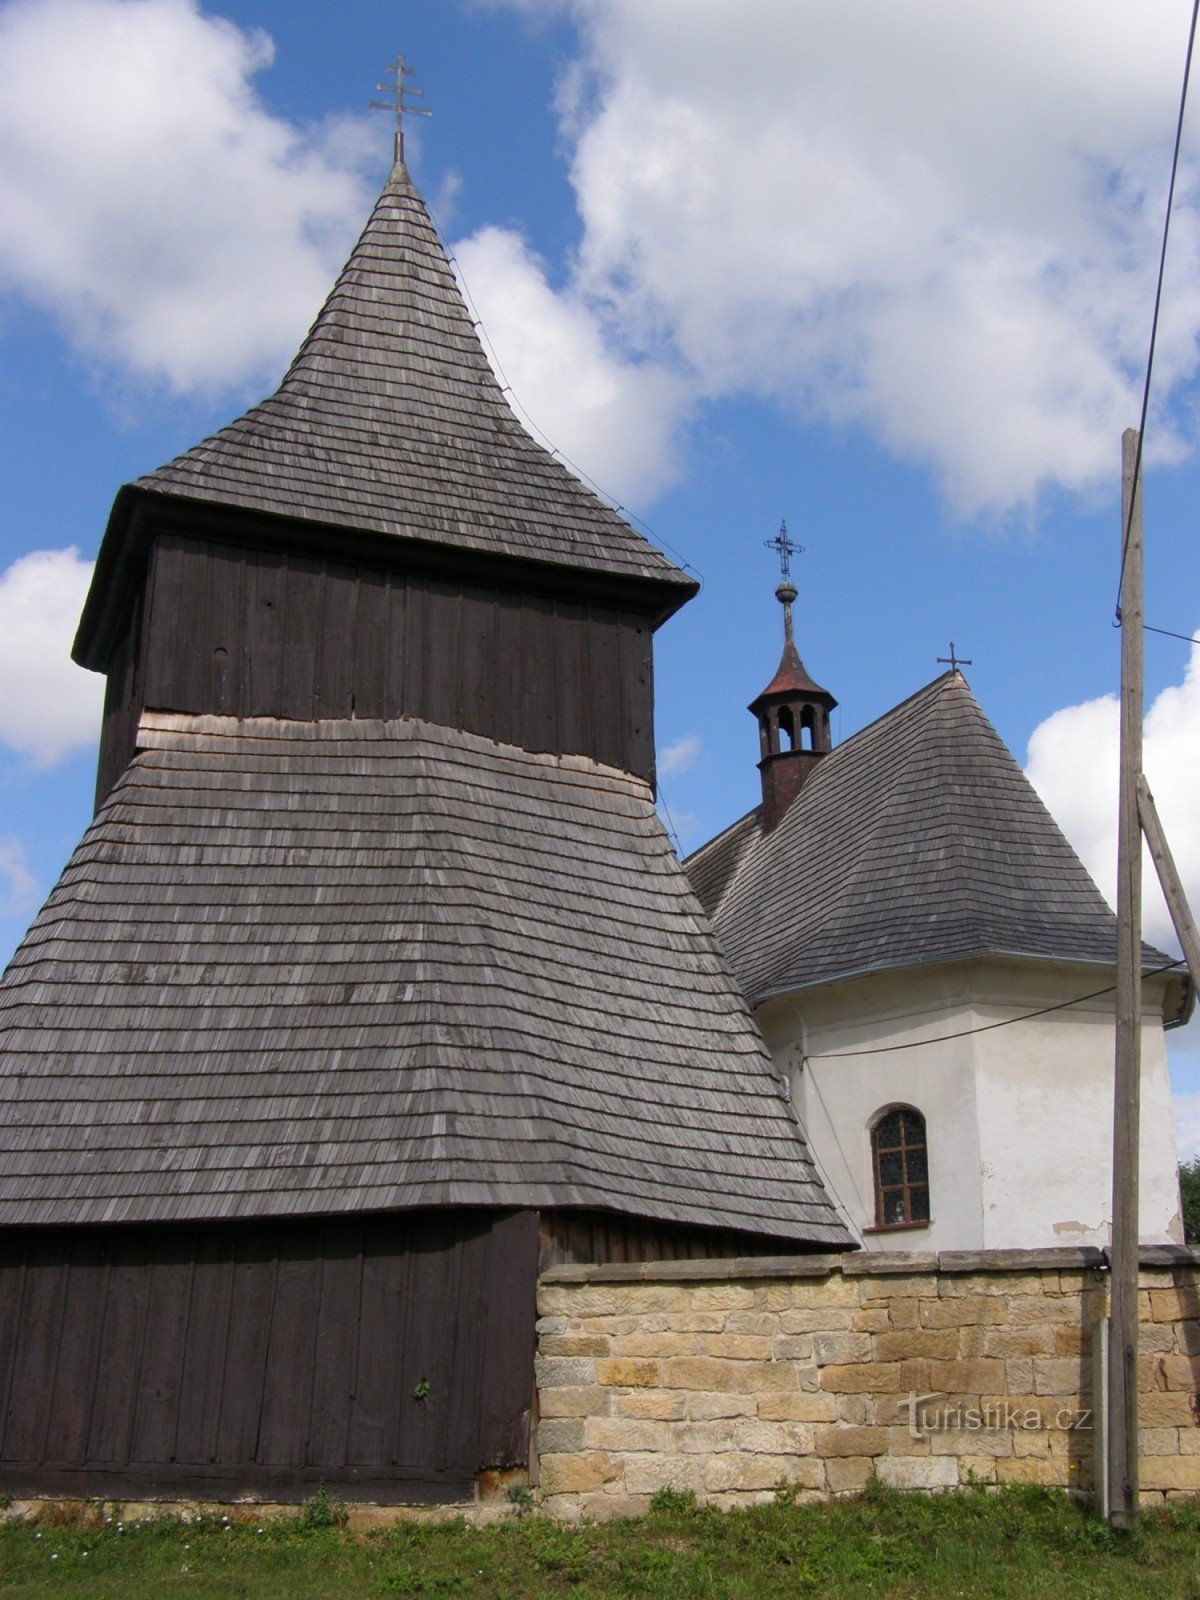 ヴィソチャニ - 木造の教会。 木製の鐘楼のある市場